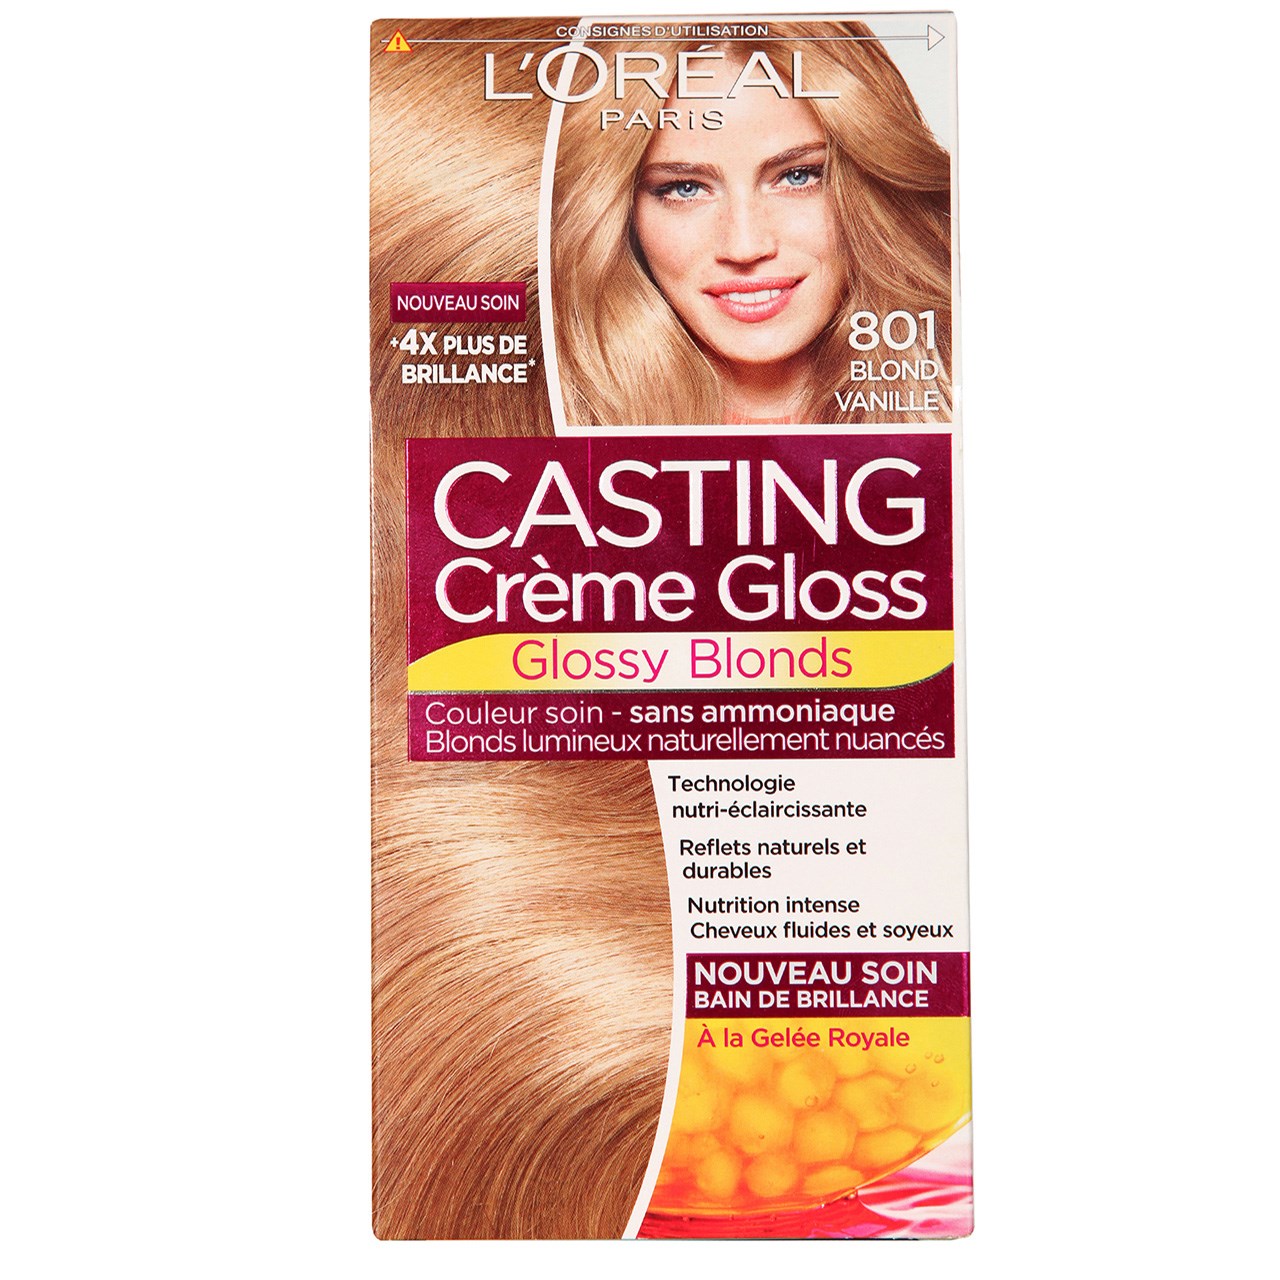 کیت رنگ مو لورآل مدل Casting Creme Gloss شماره 801